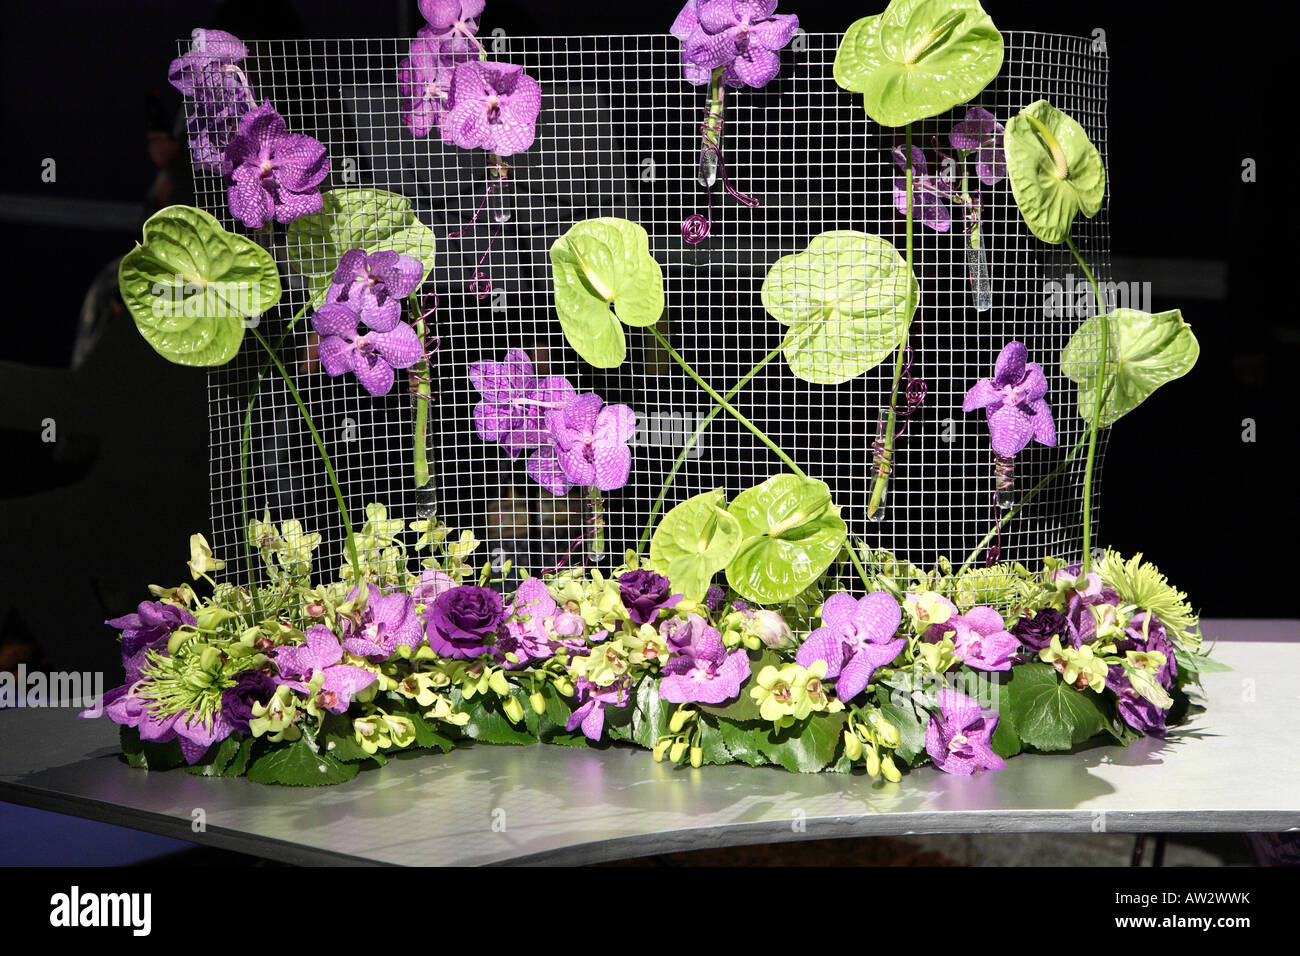 Tabla arreglo de orquídeas púrpura y verde lima lirios en malla de alambre doblado en curva. Philadelphia Flower Show 2008 Foto de stock